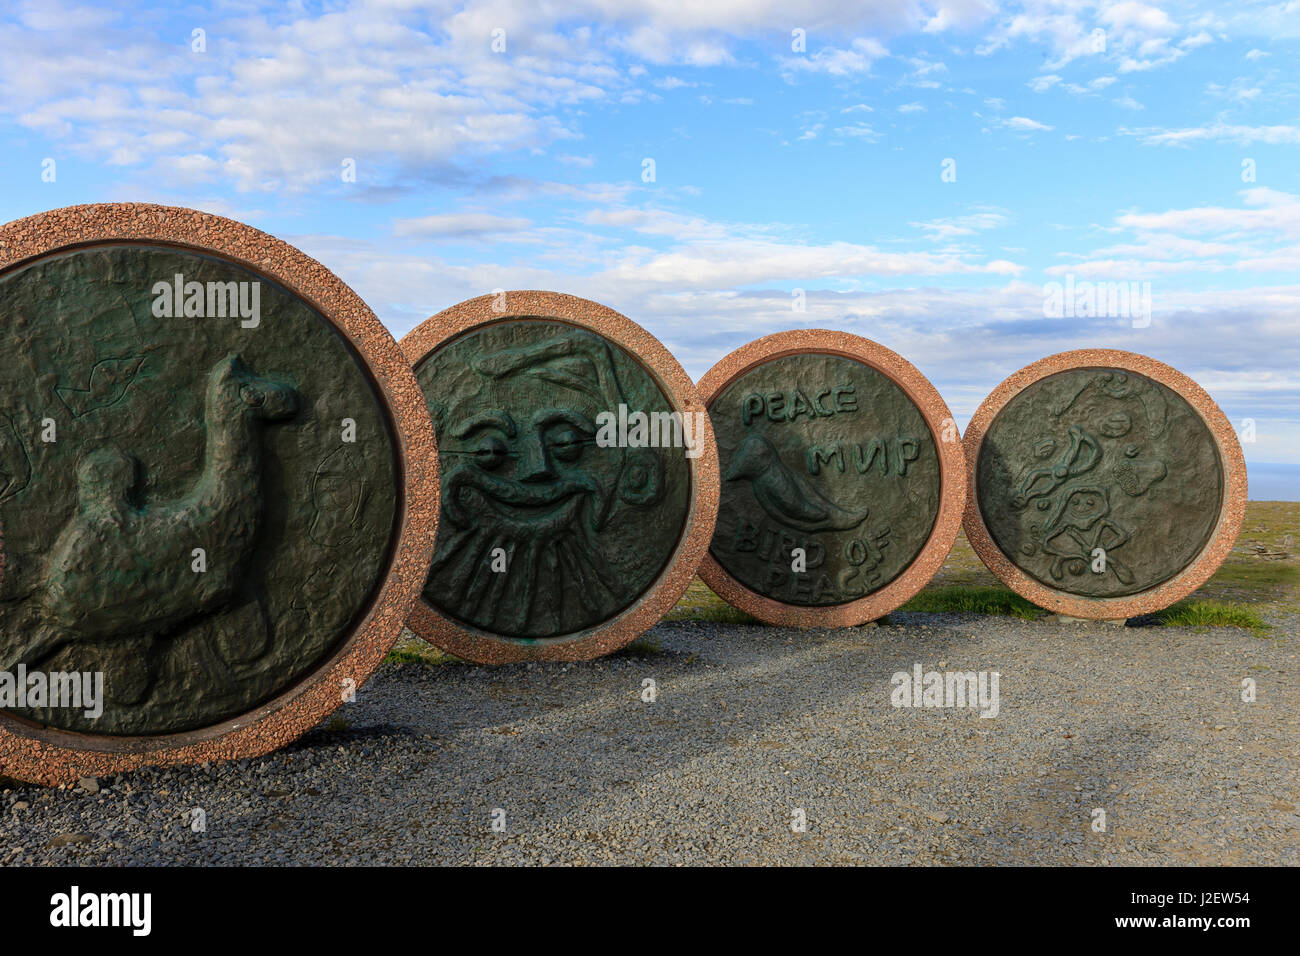 Figli della Terra. In fusione di bronzo in semi-cerchio. Disegnata da sette bambini provenienti da diversi luoghi del mondo. Capo Nord. Honningsvag. Foto Stock